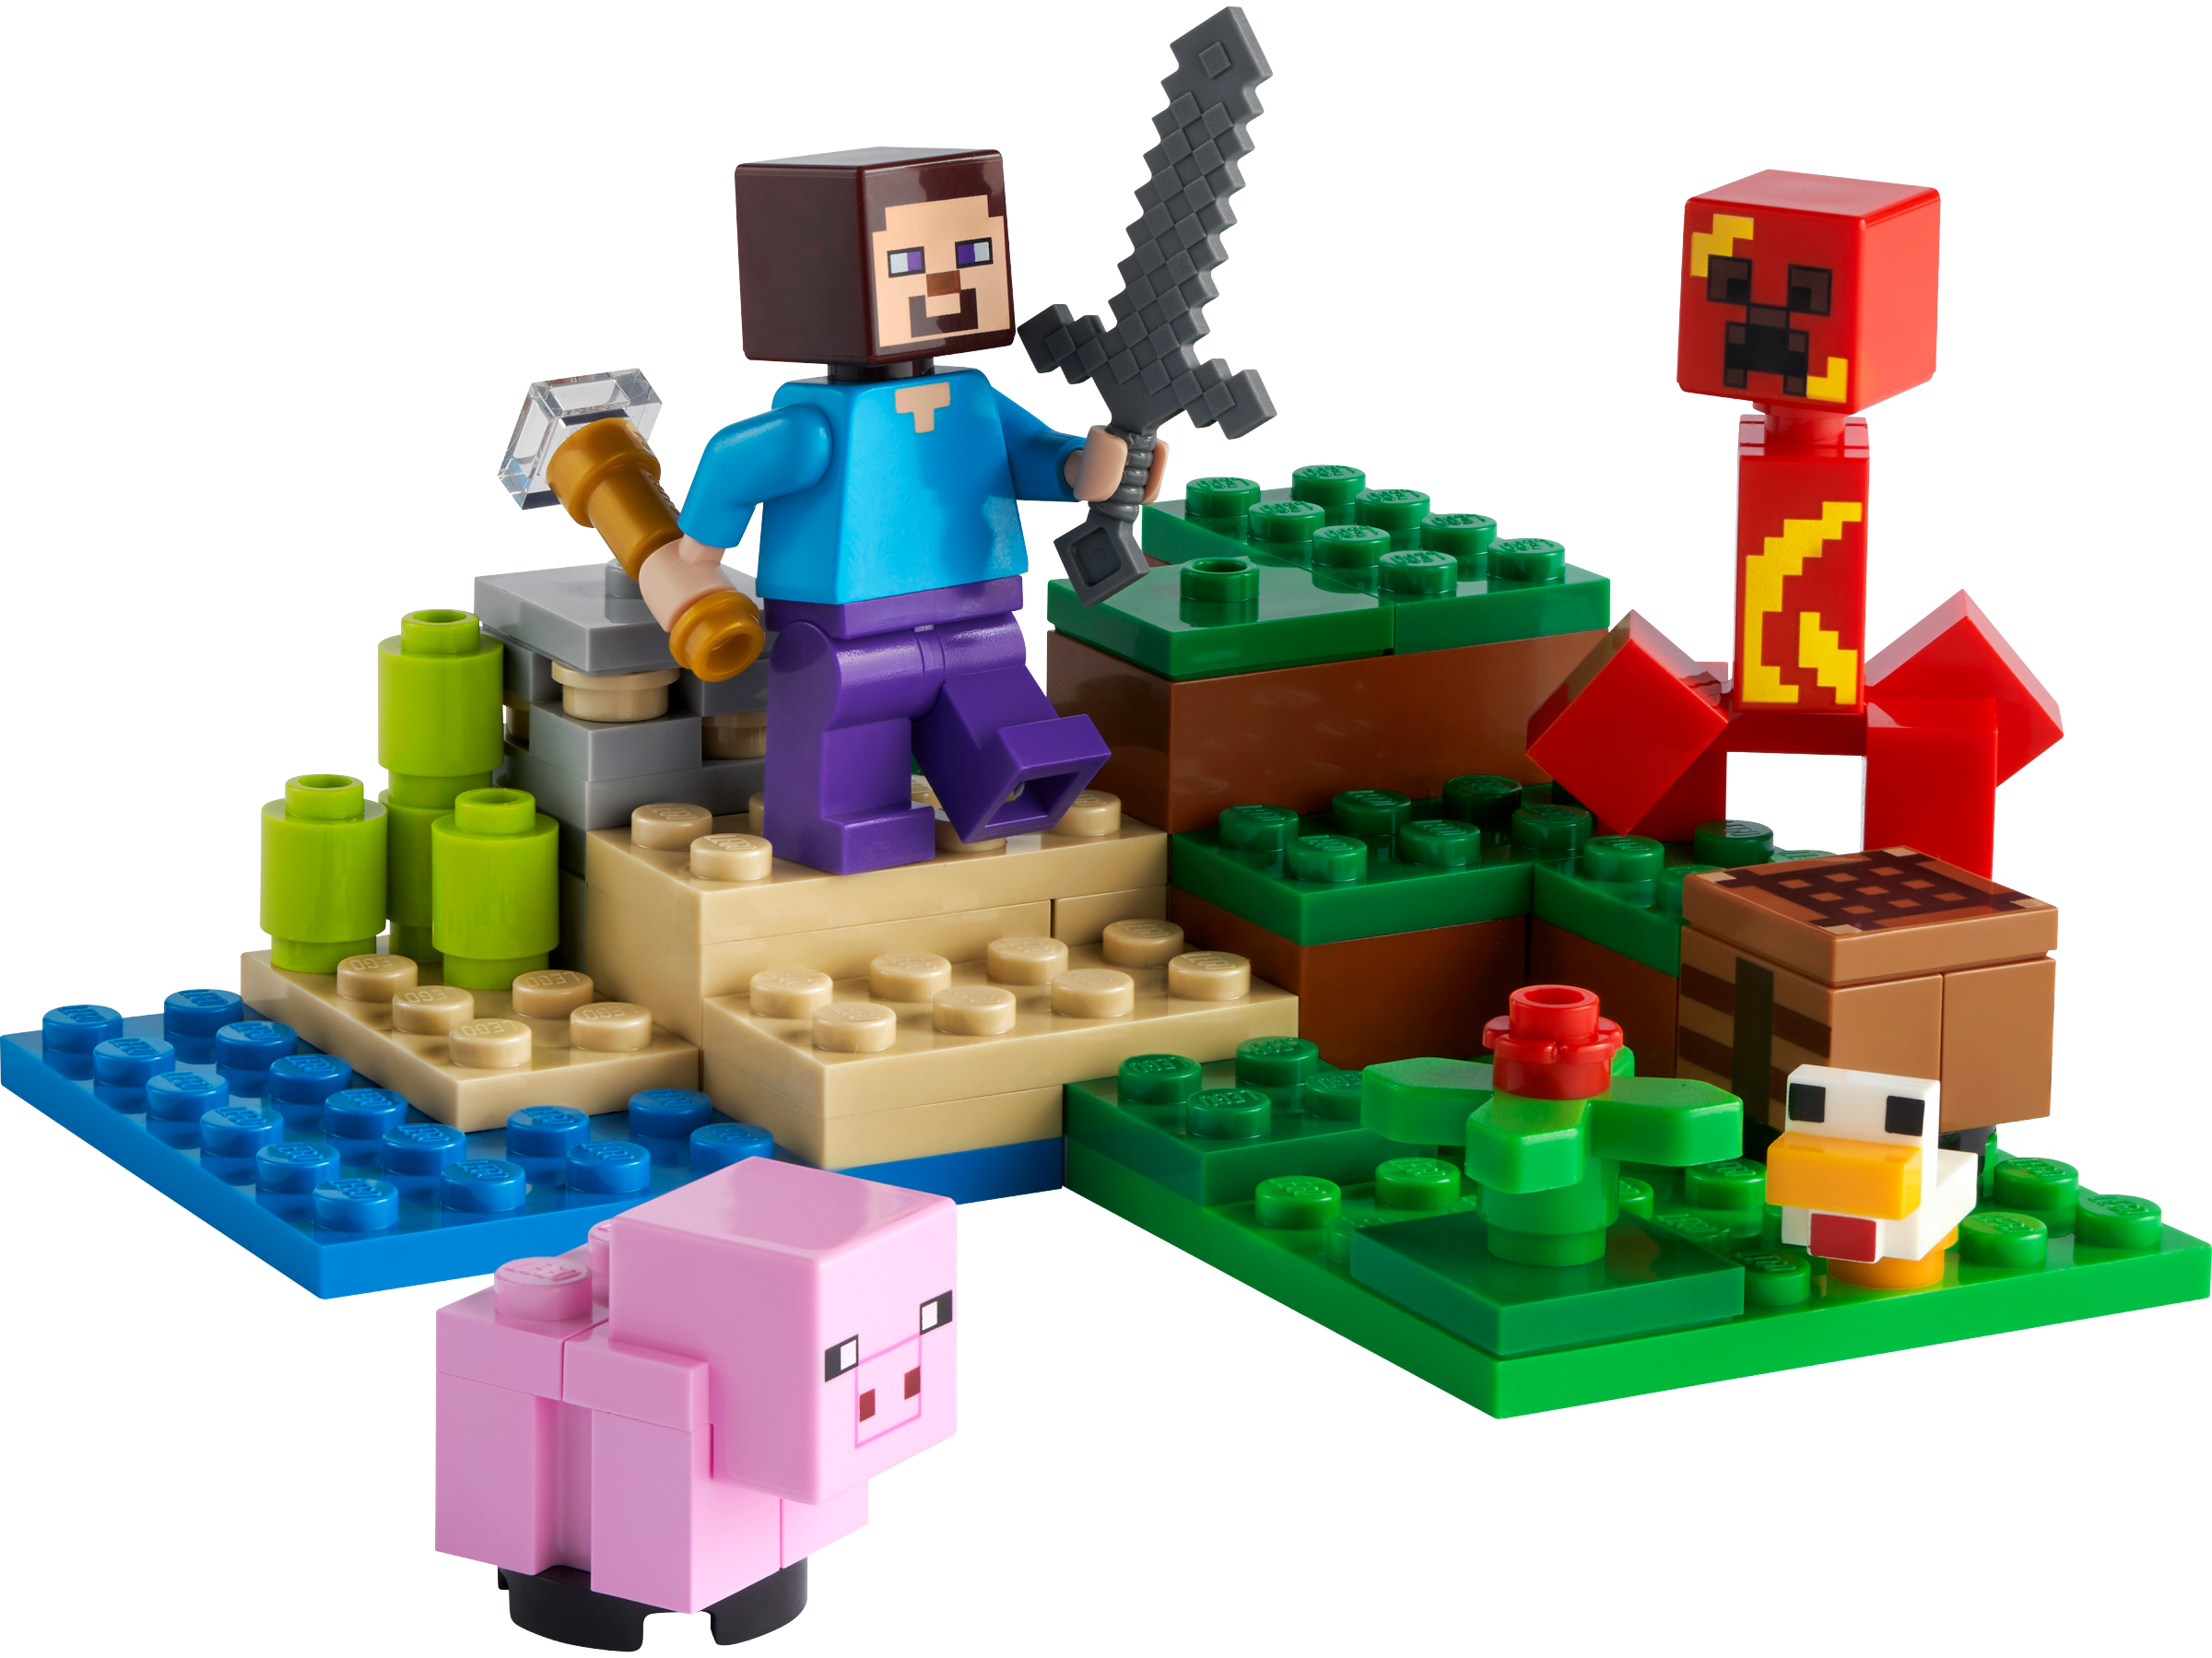 LEGO 21177 Minecraft Der Hinterhalt des Creeper, Set, Steve, Schweinchen, Küken